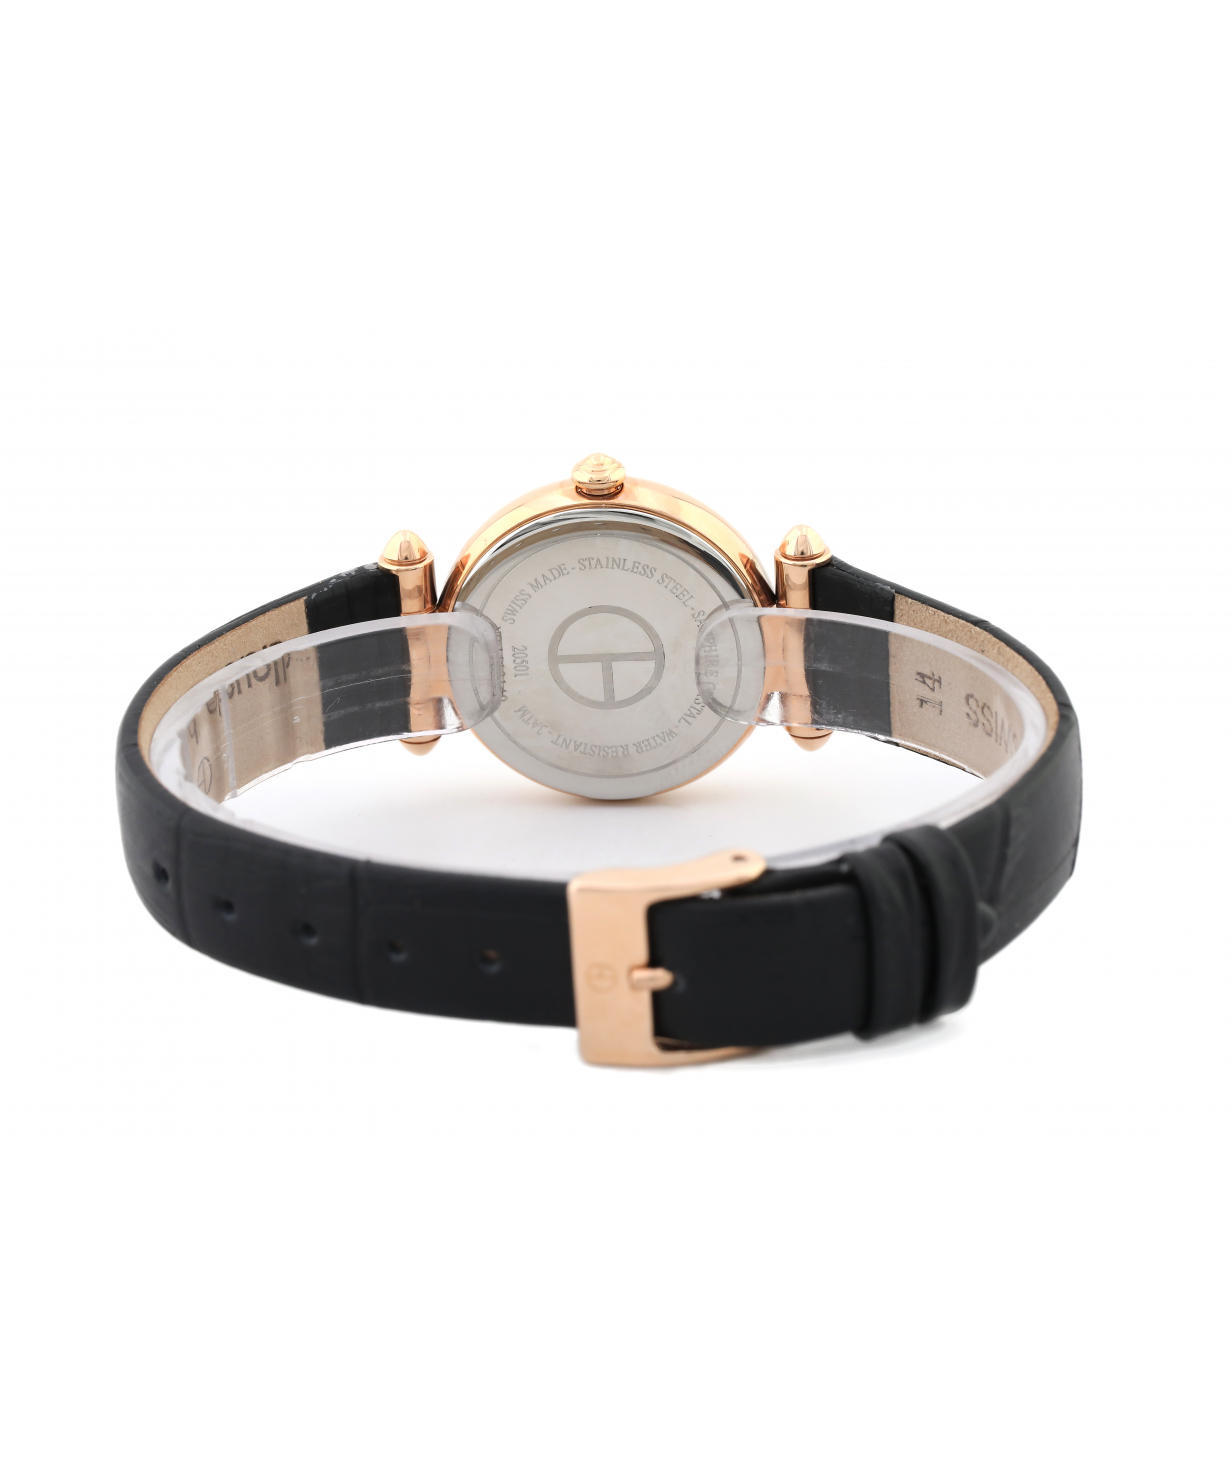 Wristwatch  `Claude Bernard`    20501 37R APR2